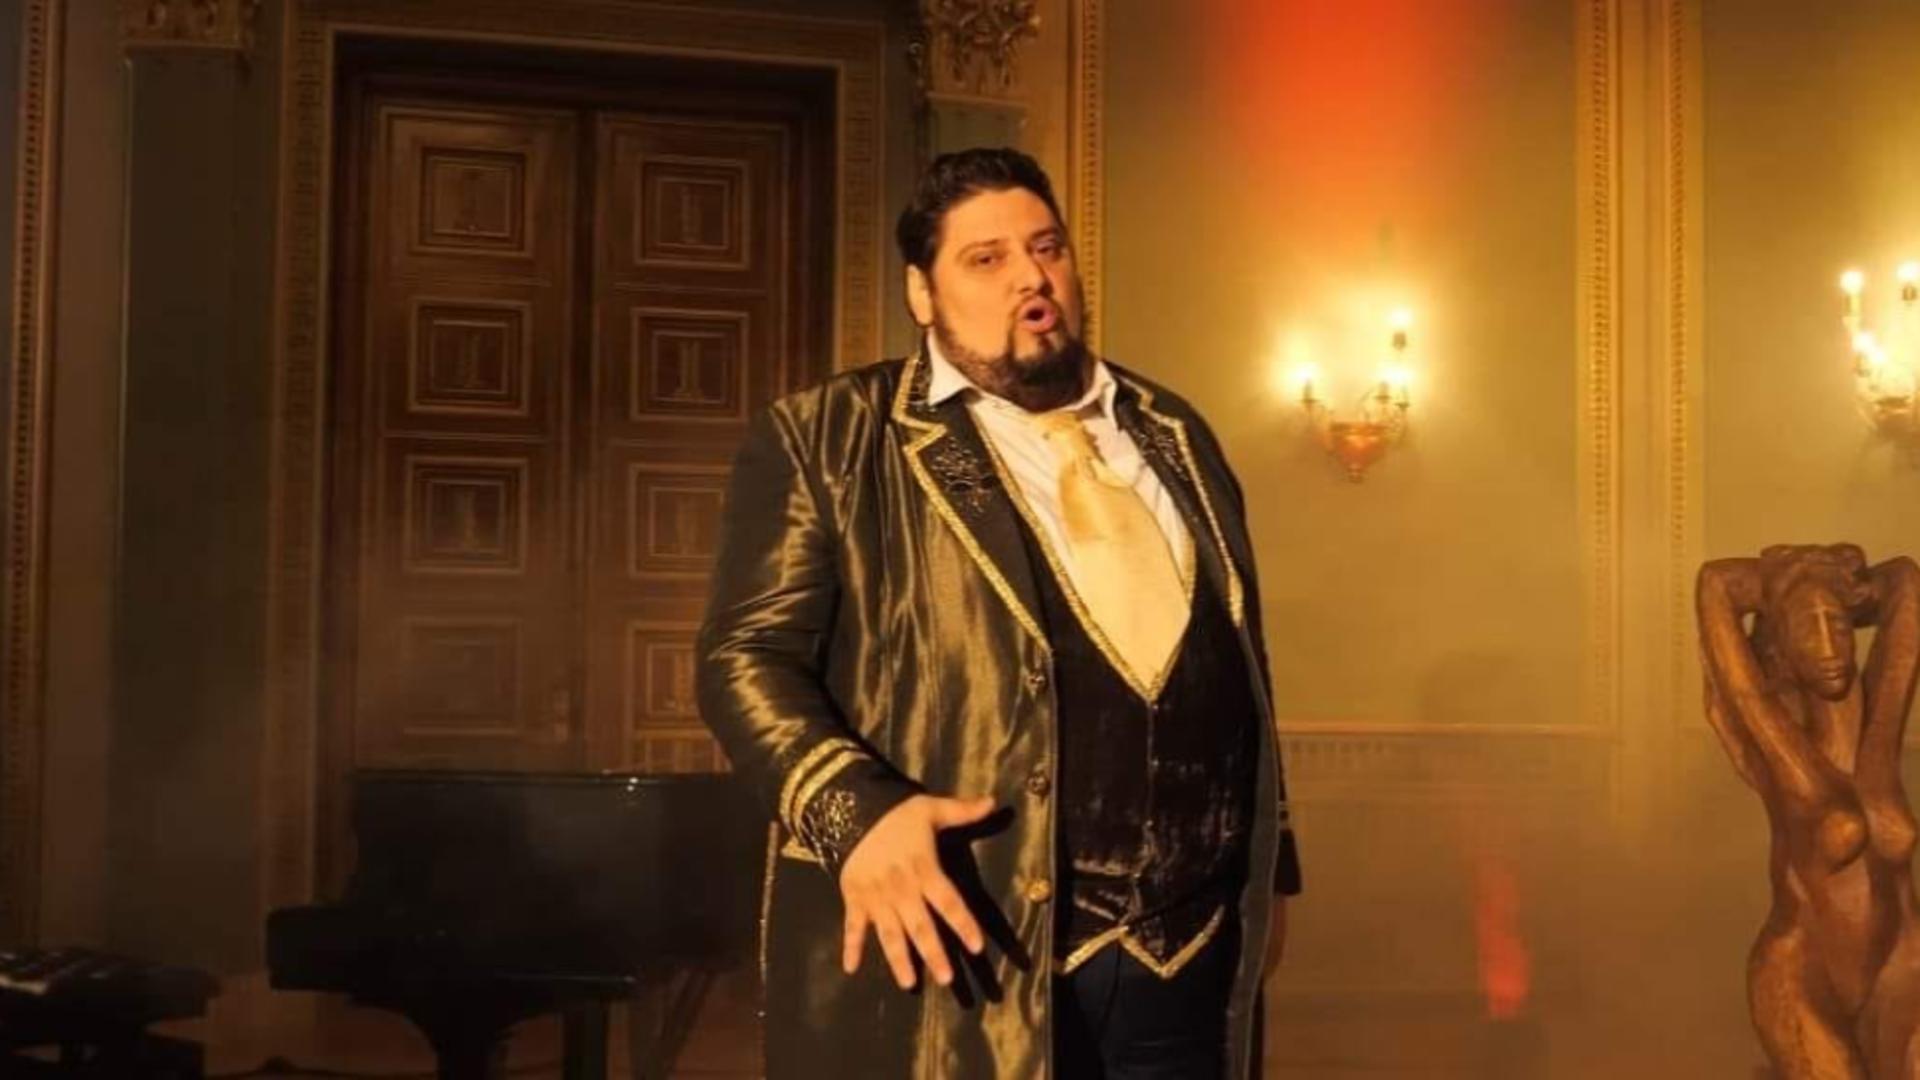 Tenorul Alin Stoica este solist al Operei Naționale București